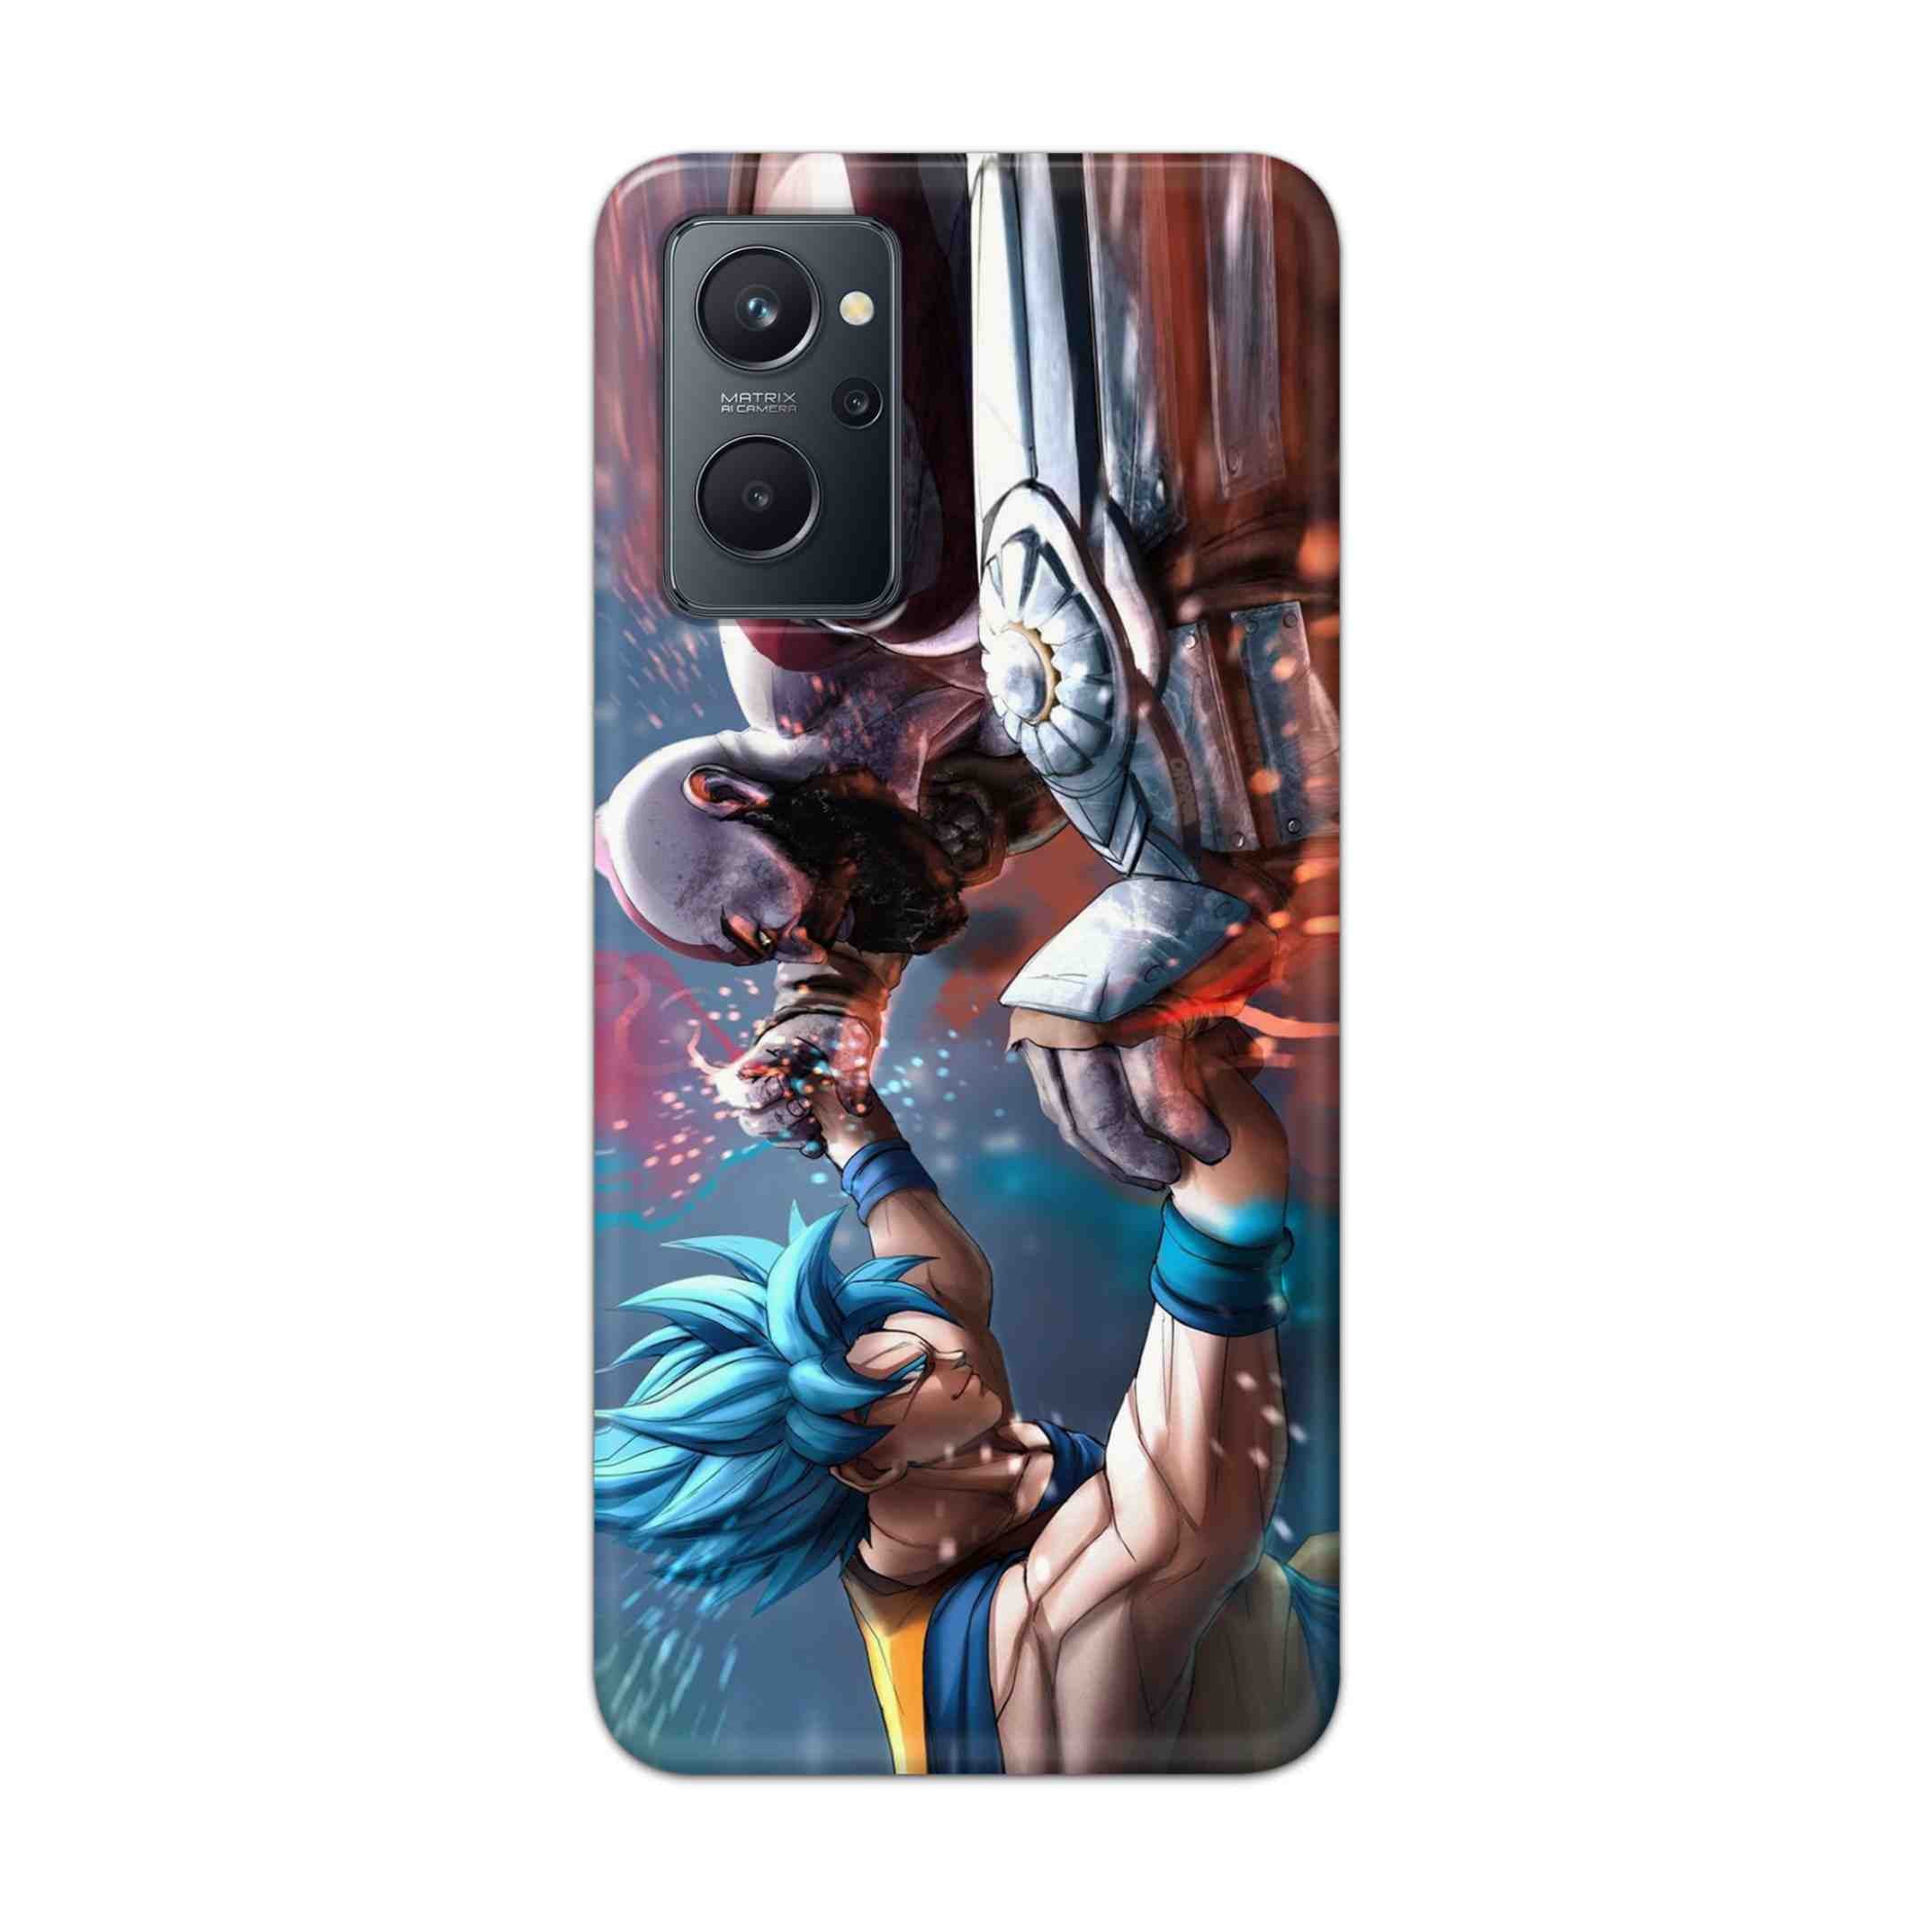 Buy Goku Vs Kratos Hard Back Mobile Phone Case Cover For Realme 9i Online